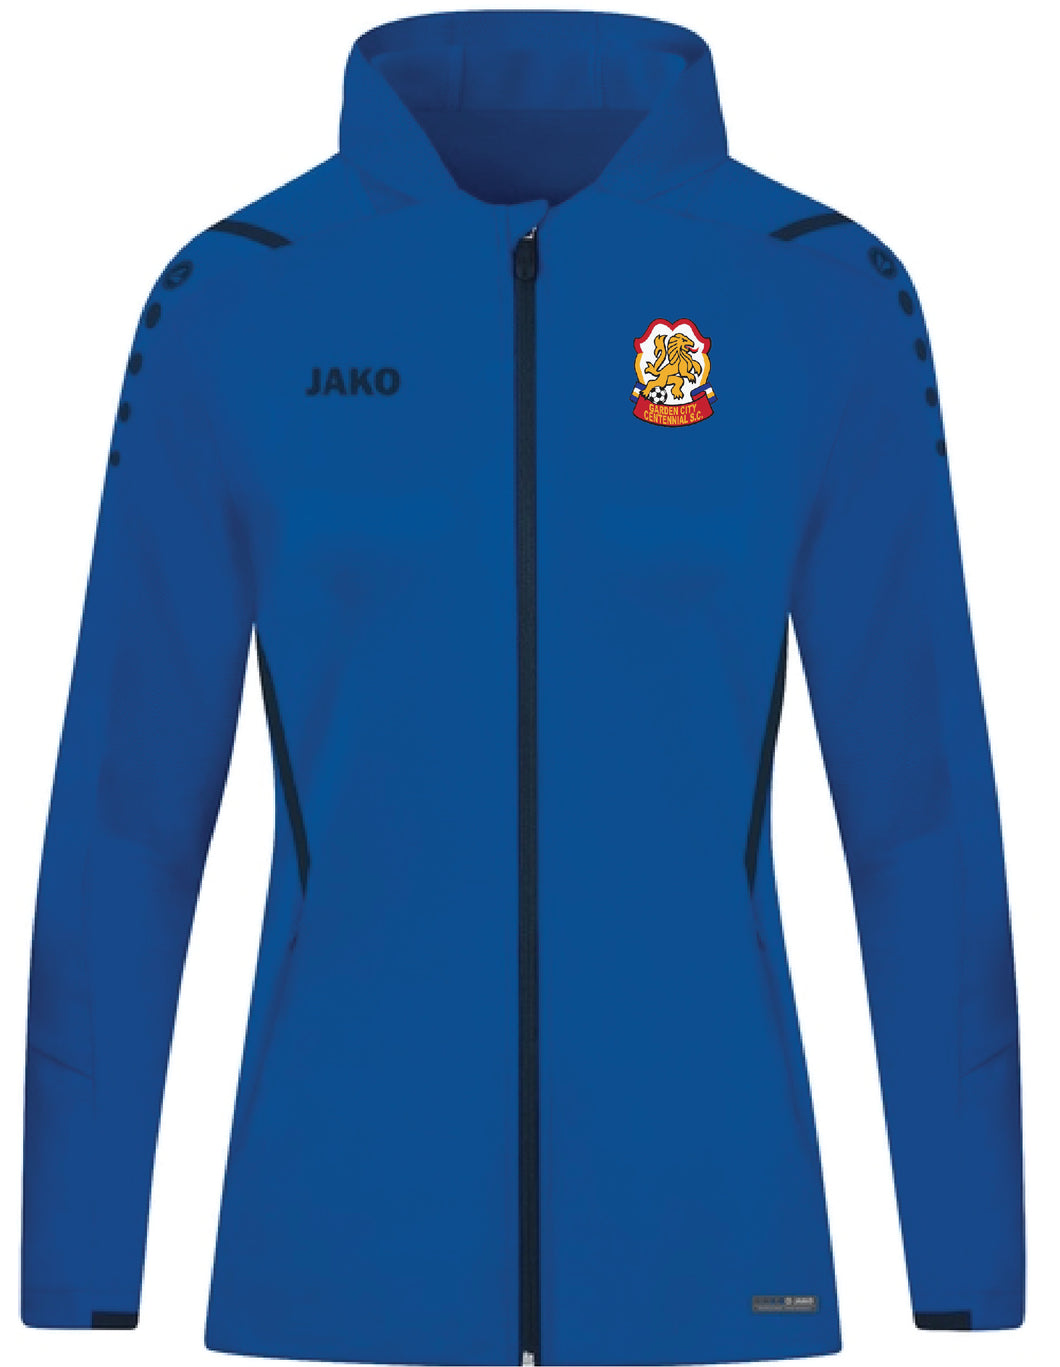 Womens JAKO Garden City Centennials Challenge Hooded Jacket GCCW6821-403